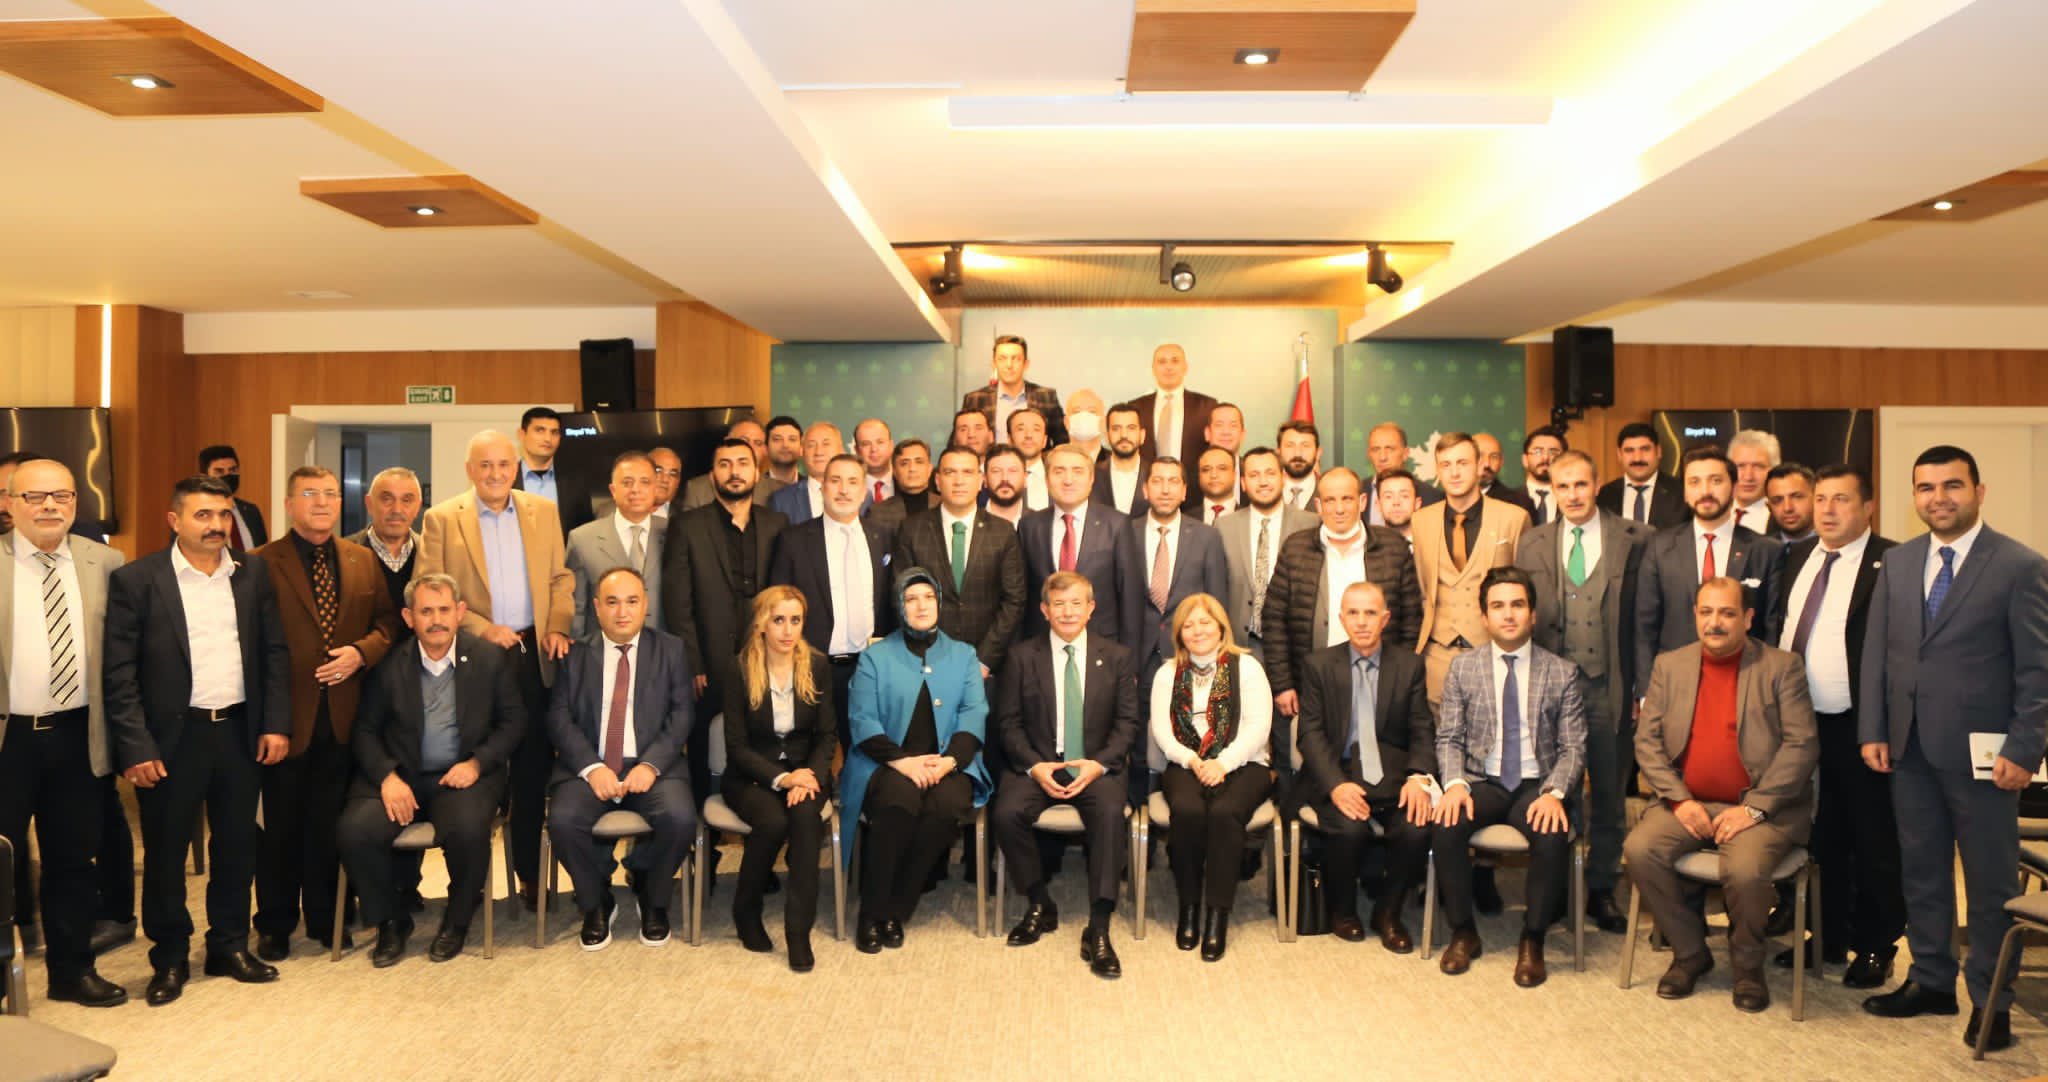 İl Teşkilat Başkanımız Mehmet Fatih Yaşar, Genel Başkanımız Sn. Ahmet Davutoğlu'nun da katılımlarıyla Genel Merkezimizde düzenlenen İl Teşkilat Başkanları Toplantısı'na katıldı